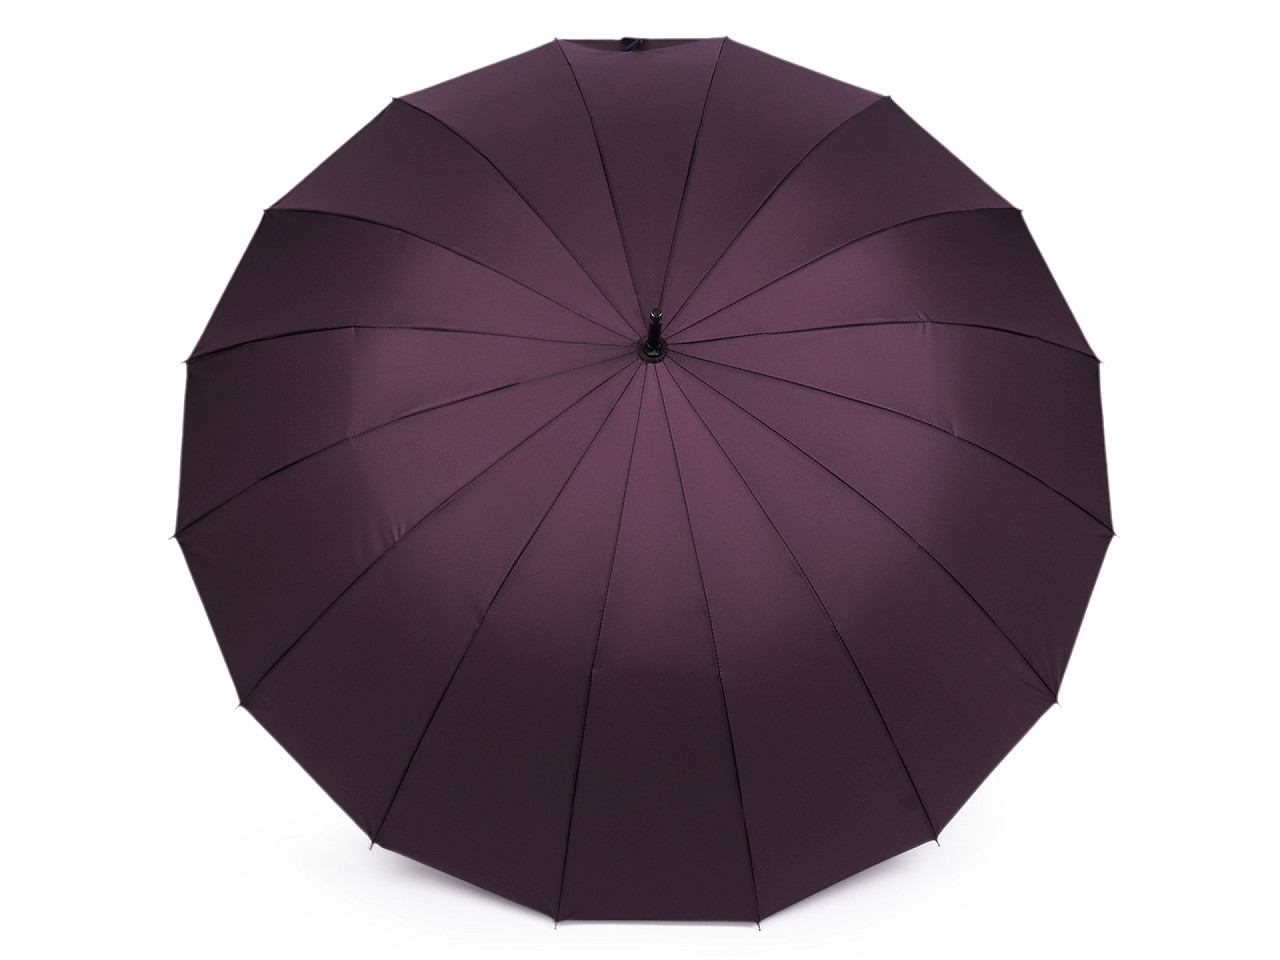 Velký rodinný deštník s dřevěnou rukojetí, barva 2 amarant